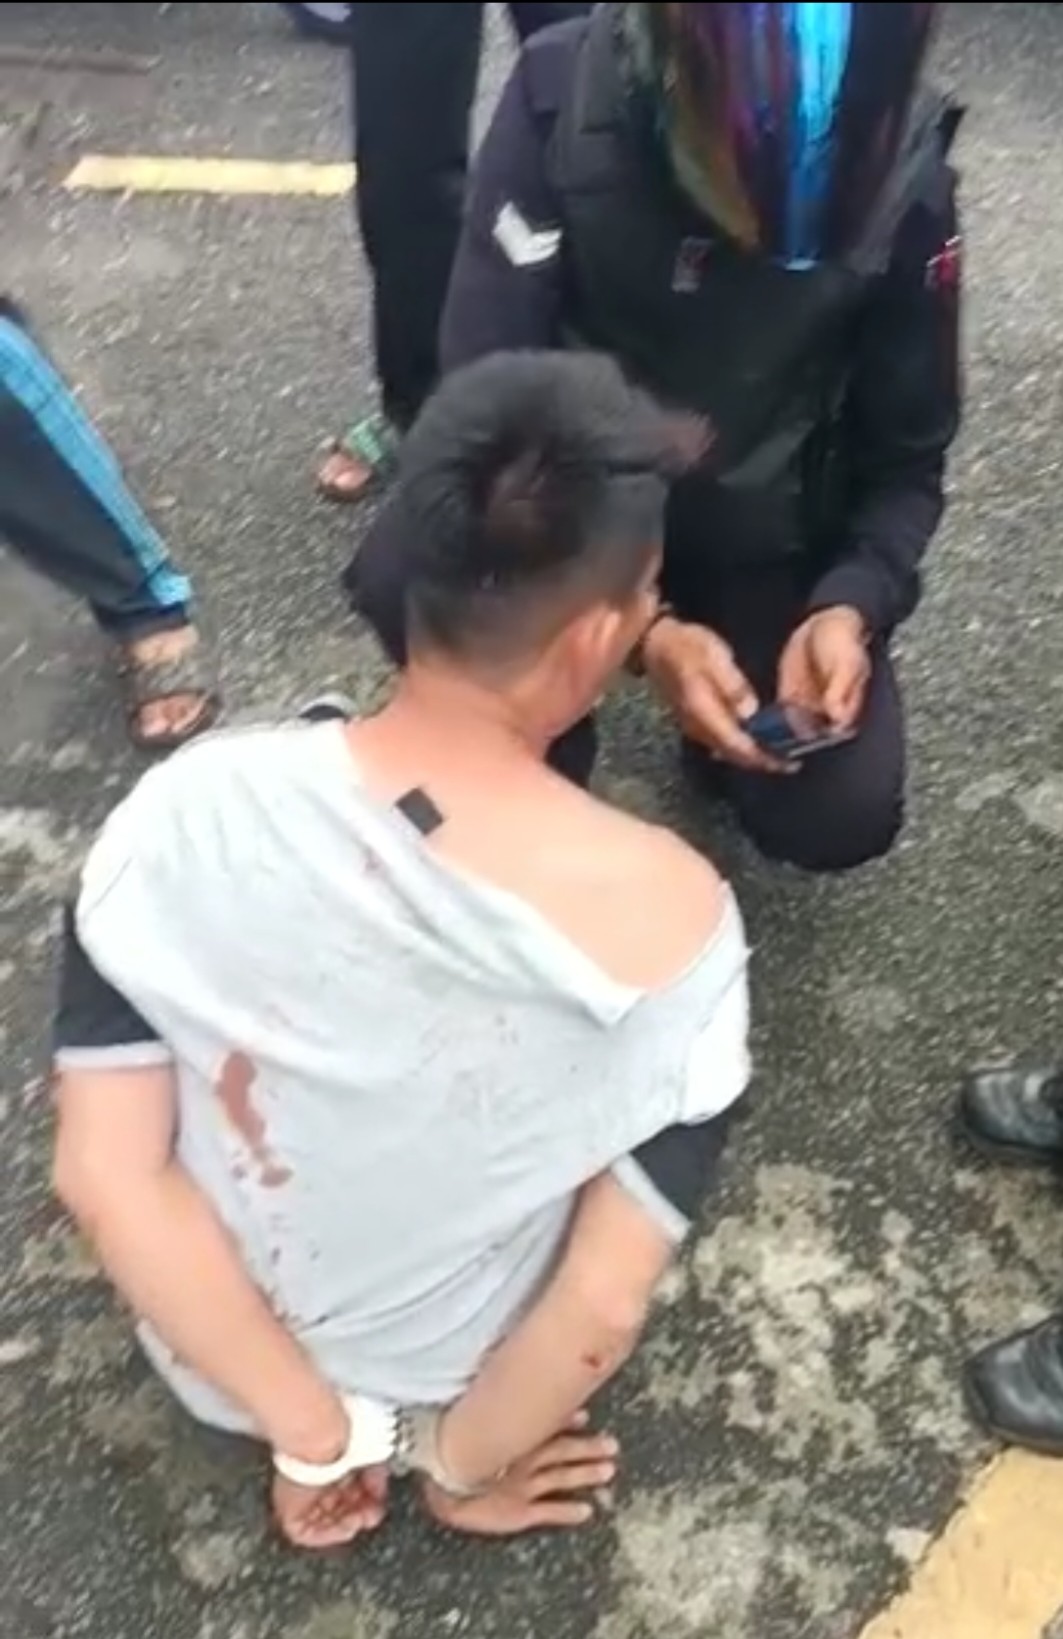 （大北马）华男双手被手铐扣脸挂彩，警证实嫌犯企图偷摩托被围捕